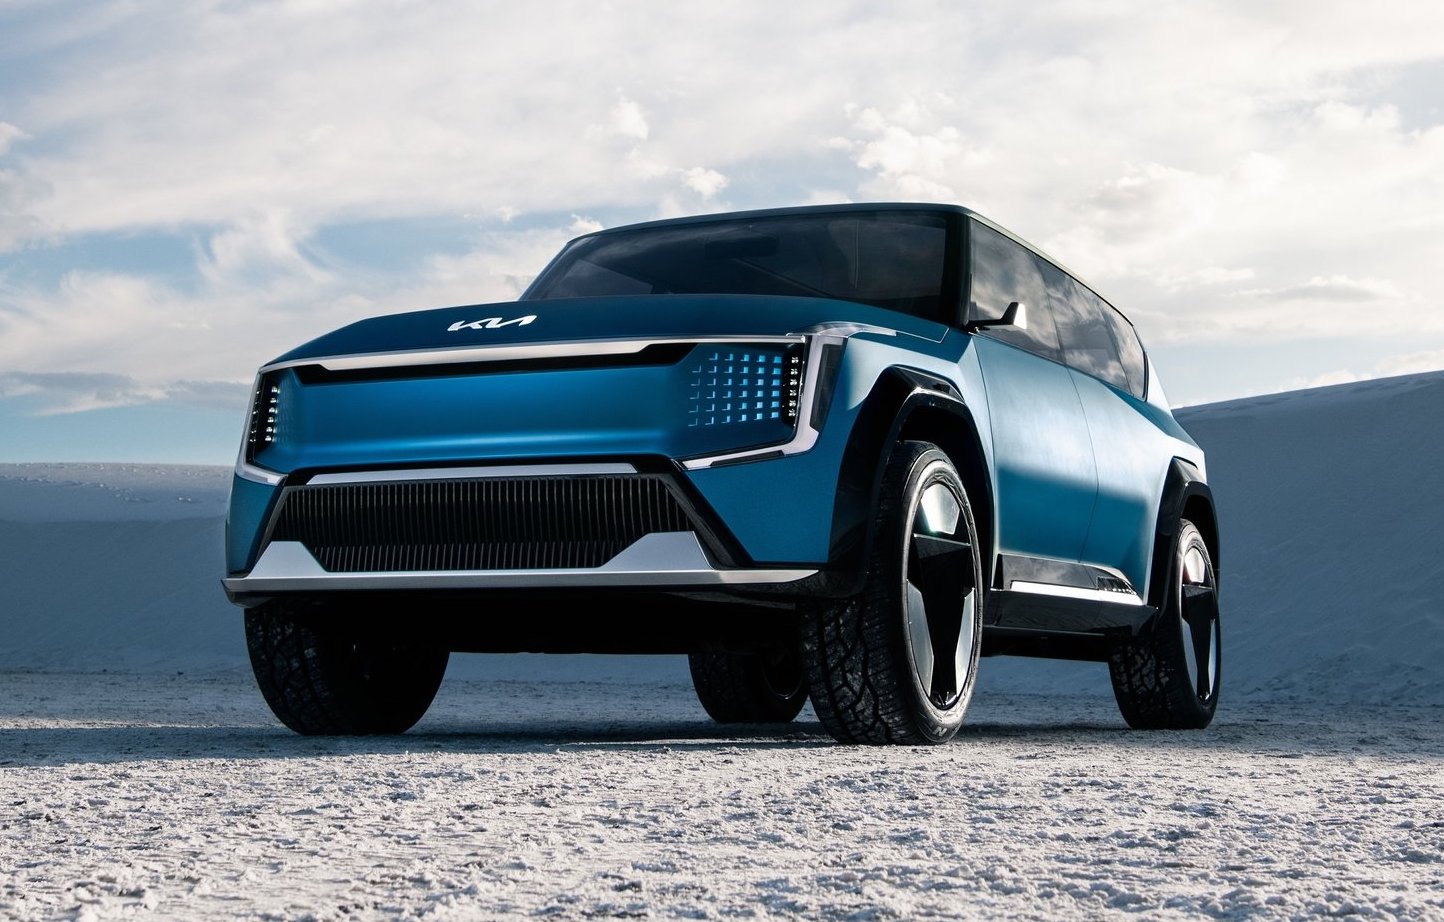 All-electric Kia Concept EV9 SUV takes to the stage in LA